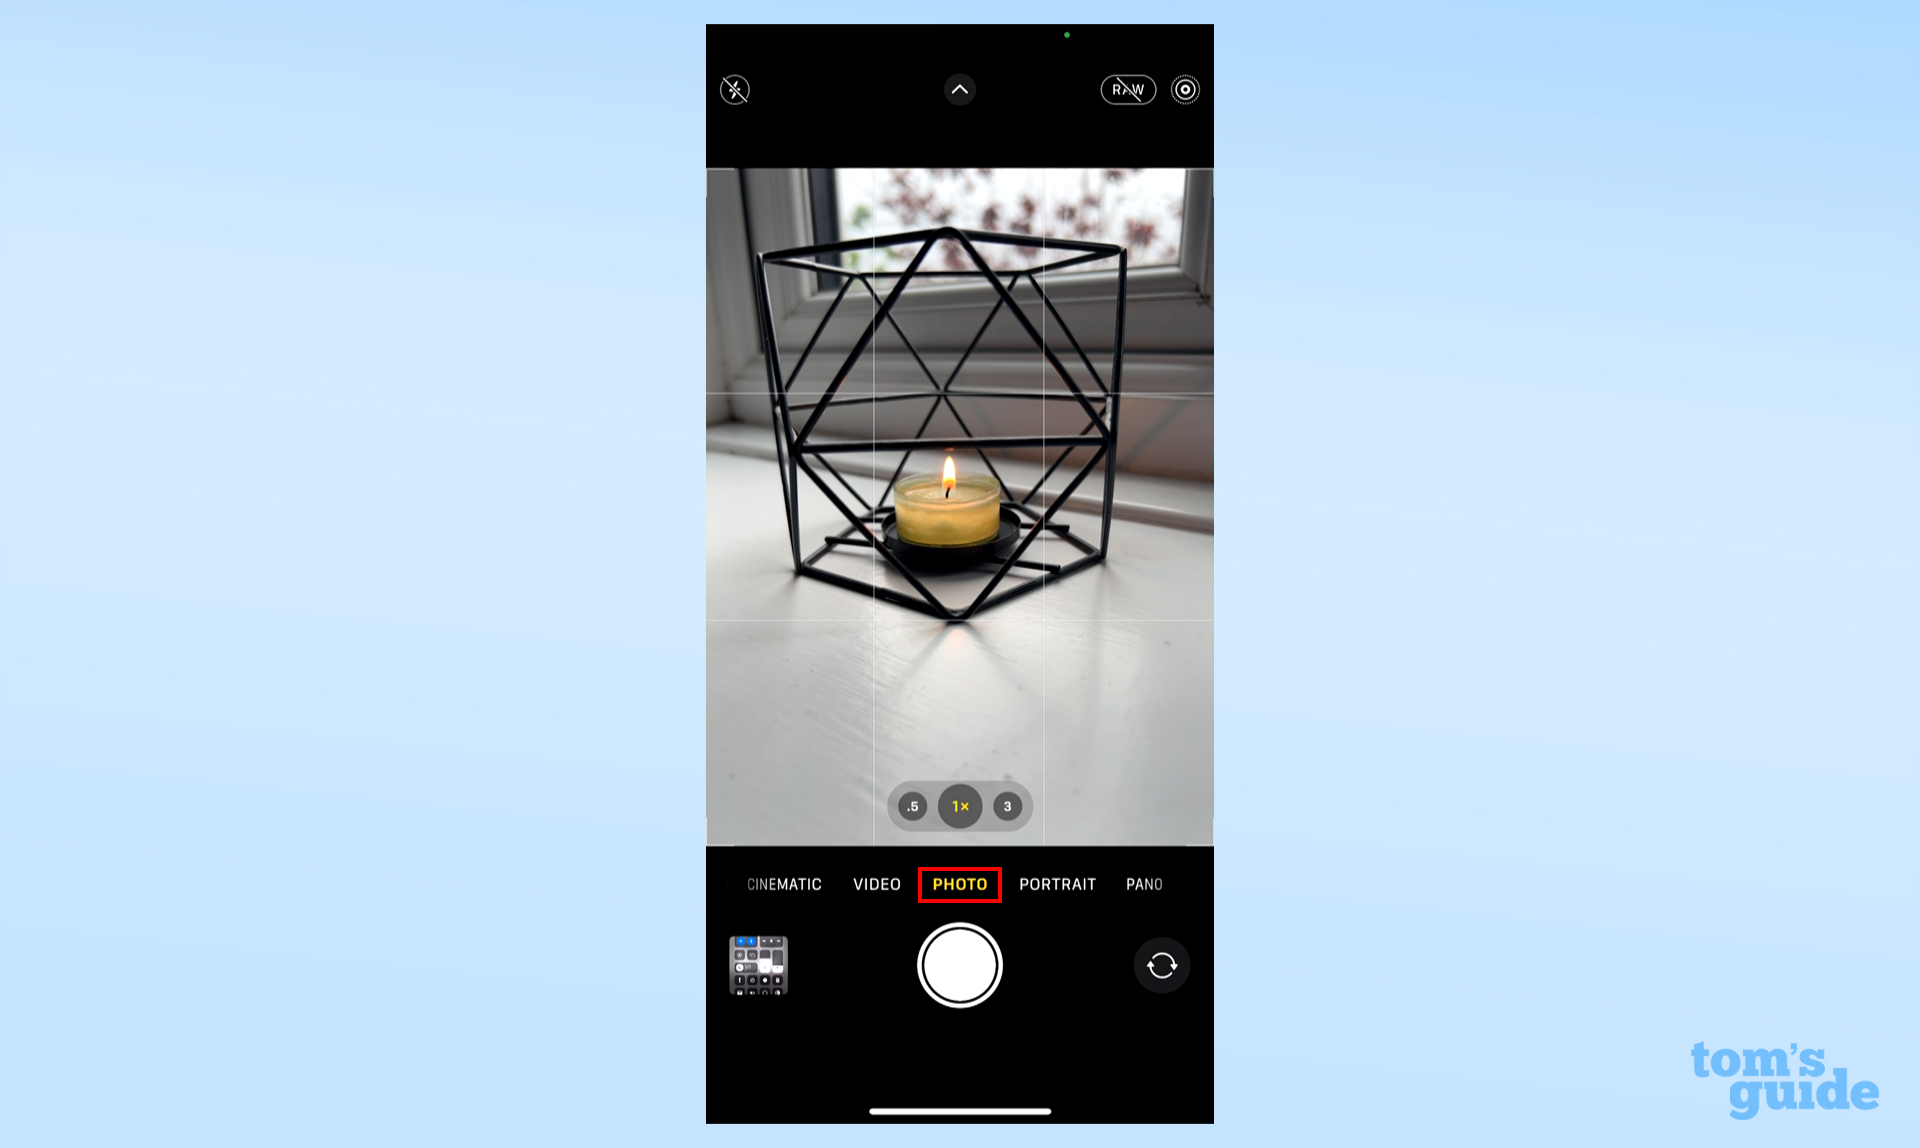 Vizörde bir mum bulunan iPhone kamera uygulamasının ekran görüntüsü